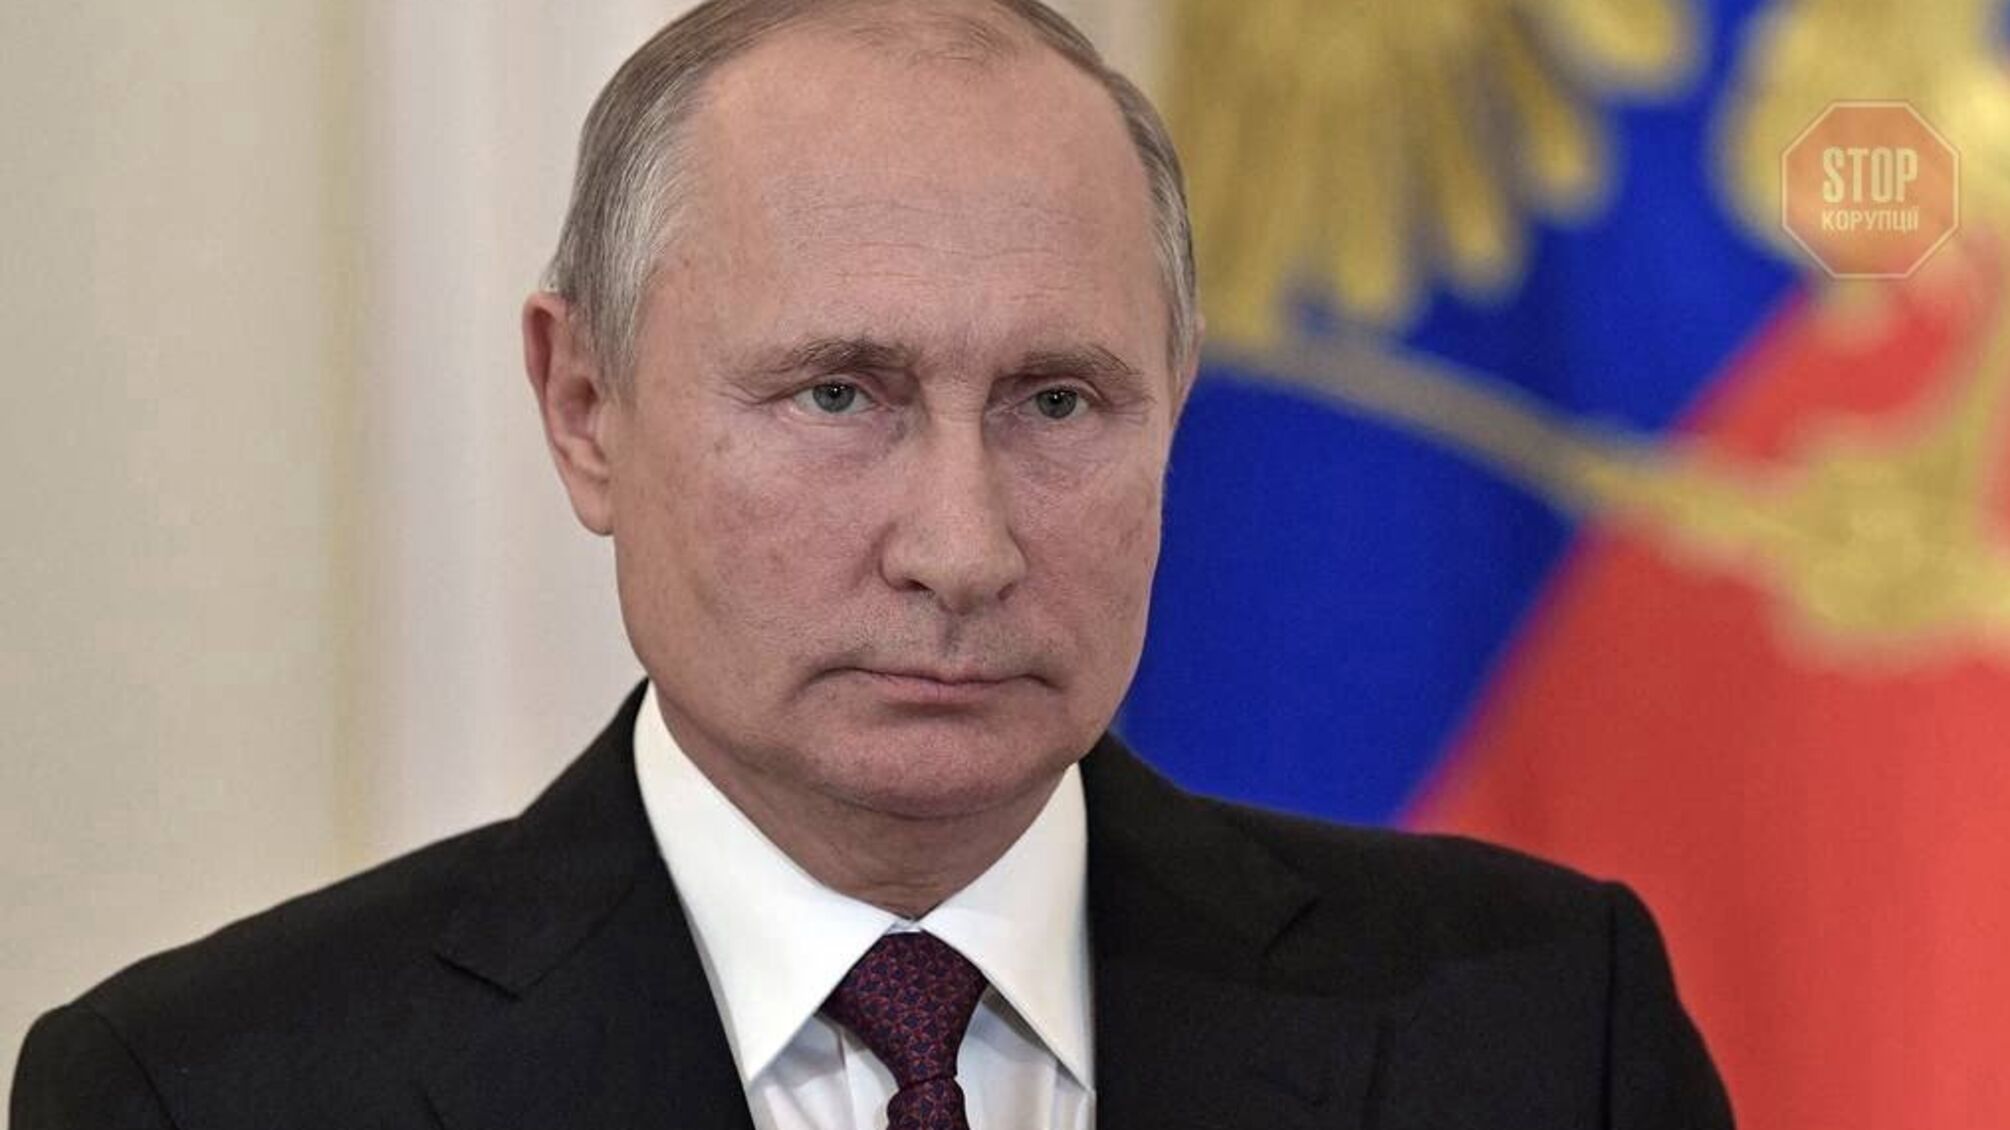 “Наступним президентом РФ може стати Наришкін”, – екс-радник Путіна